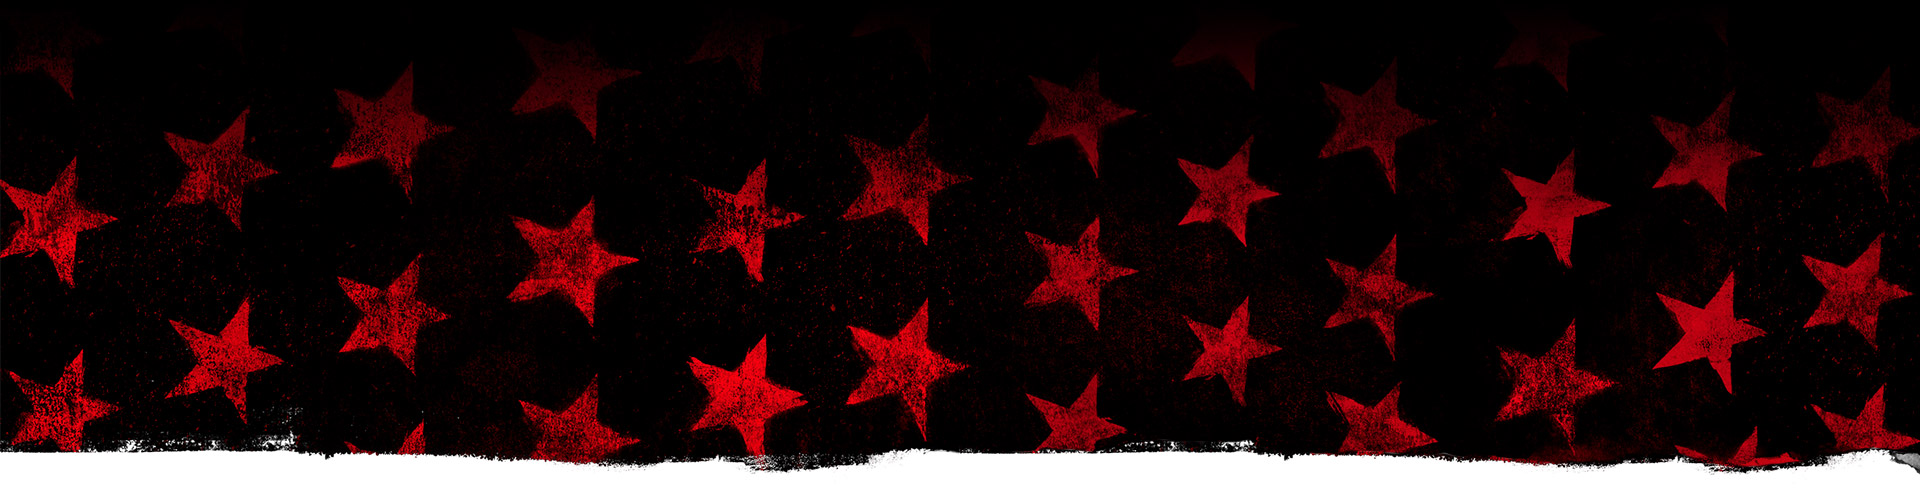 Röda stjärnor mot en svart bakgrund.